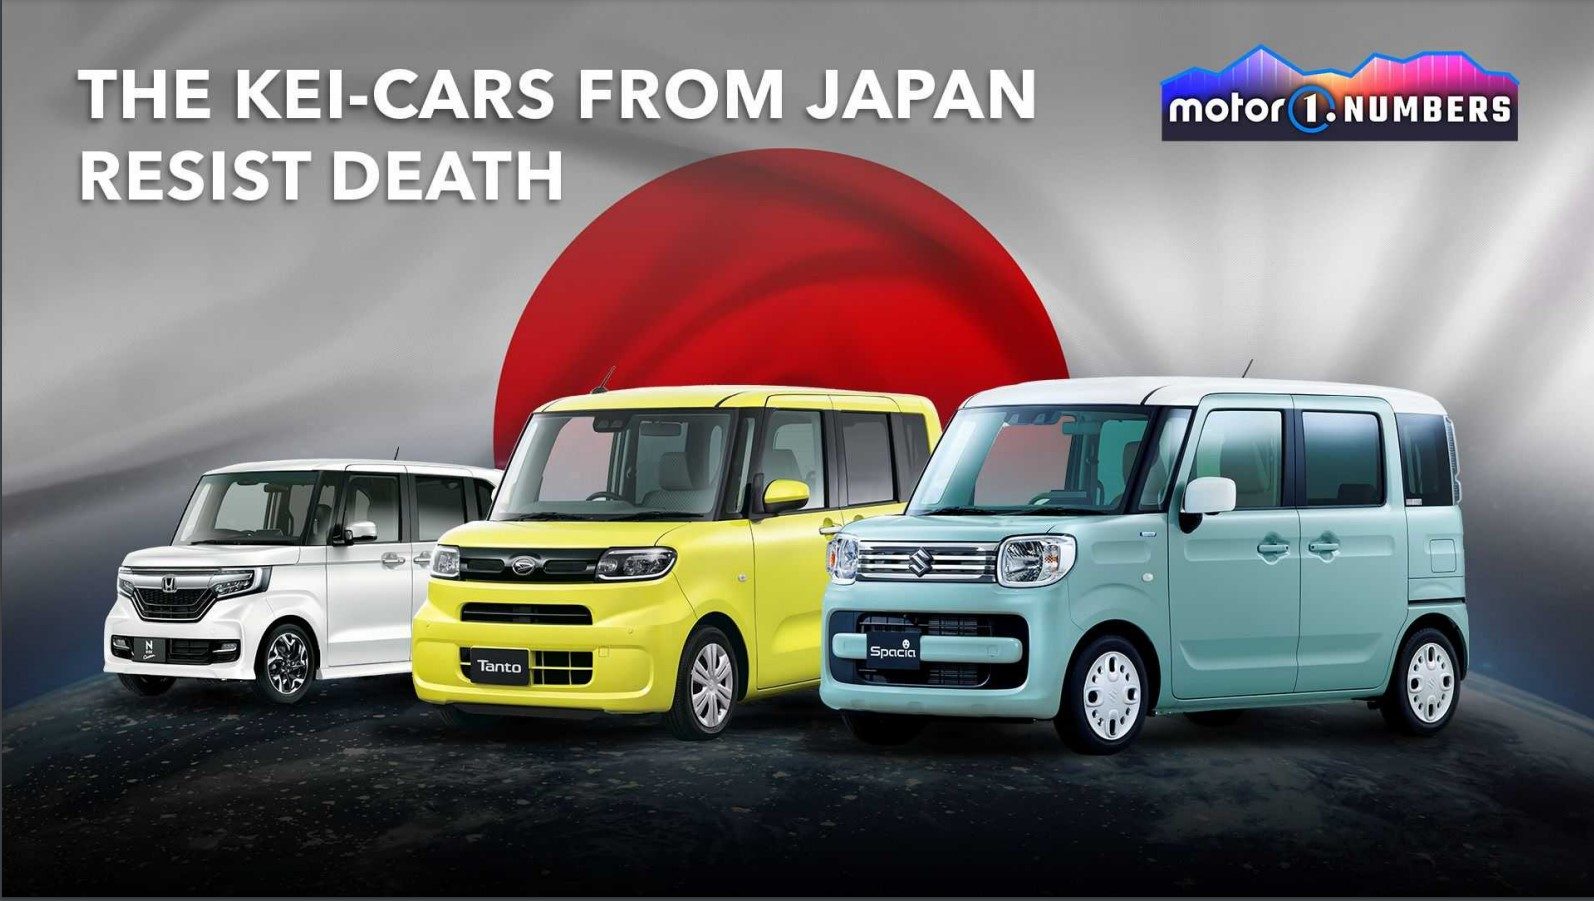 Na obrazku przedstawione są trzy małe samochody, znane jako "kei-cars", które pochodzą z Japonii. Samochody te są kompaktowe i mają prostokątne kształty. Od lewej do prawej:

Biały samochód marki Honda z chromowaną atrapą chłodnicy i srebrnymi felgami.
Jaskrawożółty samochód z napisem "Tanto" na przednim zderzaku.
Jasnoniebieski samochód z napisem "Spacia" na przednim zderzaku.
W tle obrazka znajduje się wielka czerwona kula, przypominająca słońce lub japońską flagę. Na górze obrazka widnieje tekst: "THE KEI-CARS FROM JAPAN RESIST DEATH". W prawym górnym rogu umieszczono logo "motor1.NUMBERS" na gradientowym tle w kolorach fioletowym i niebieskim. Tło obrazka jest szaro-białe z efektem mgły lub chmur.